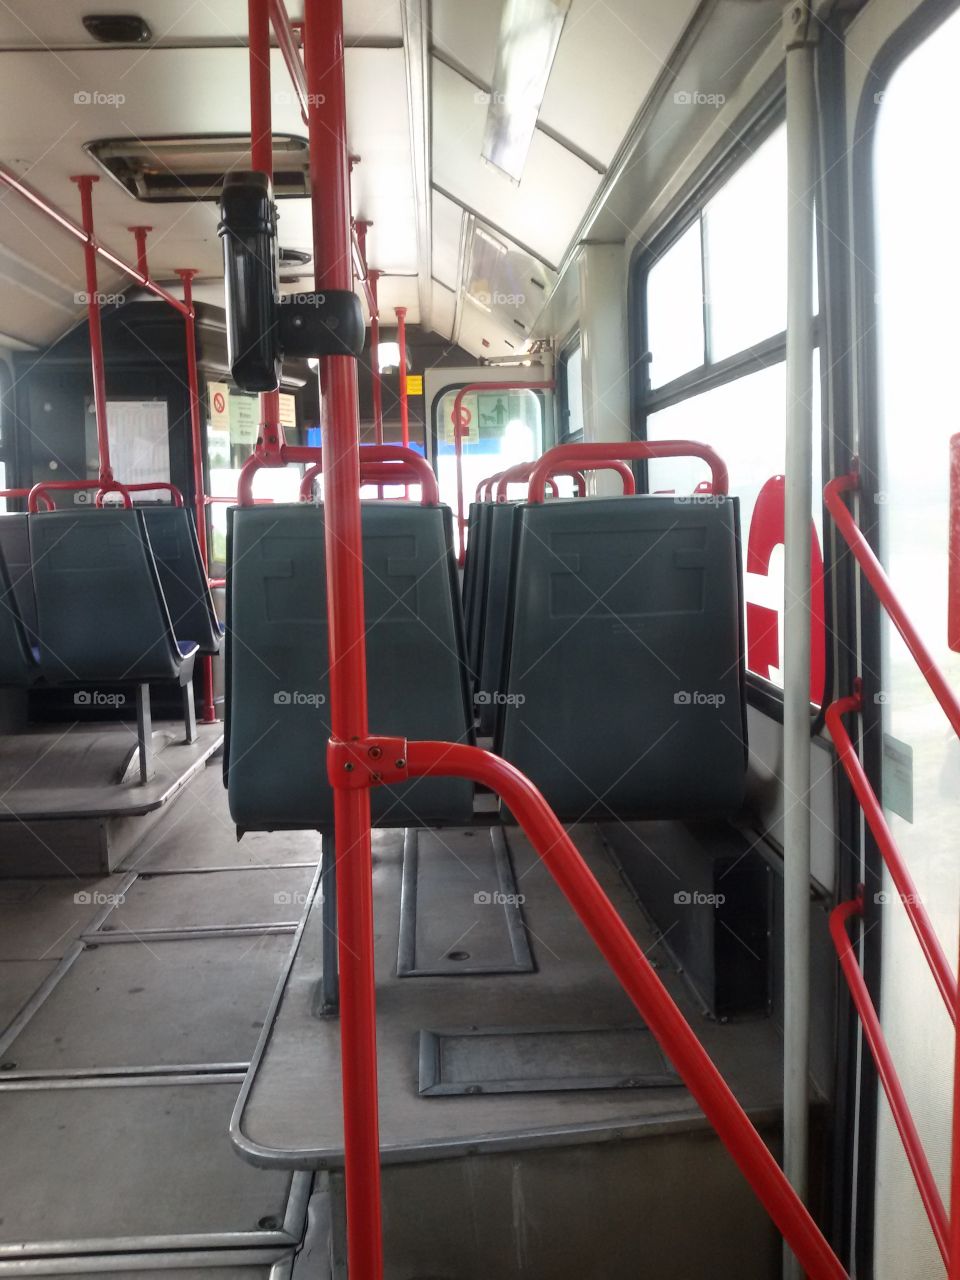 autobus inside, bus interior